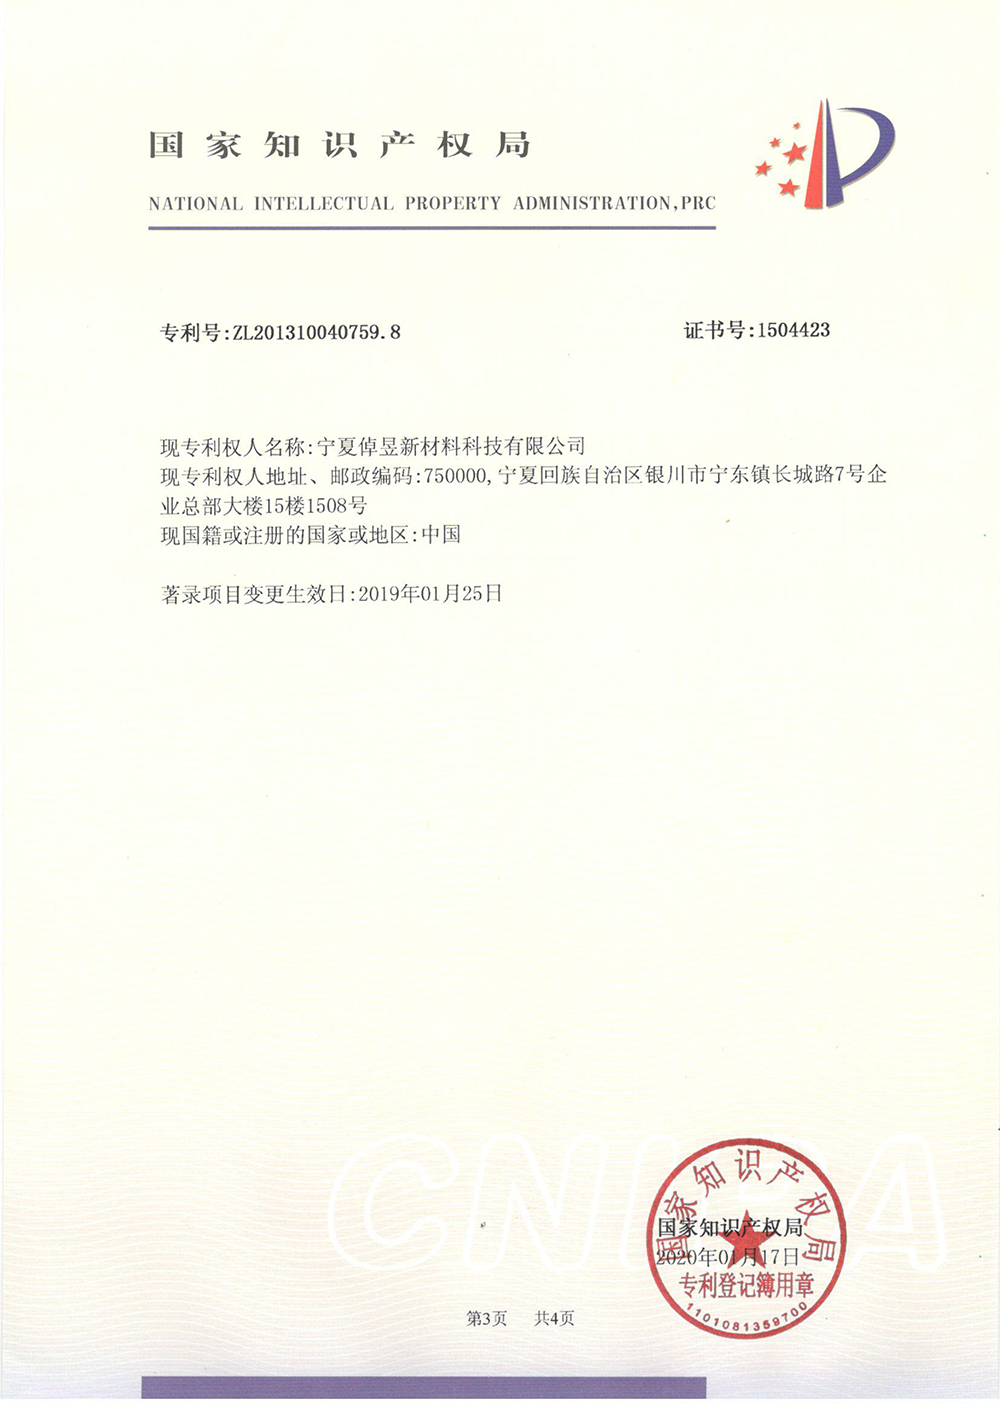 2-乙基-4-甲基咪唑的方法-专利登记簿-3_上海浩登材料股份有限公司